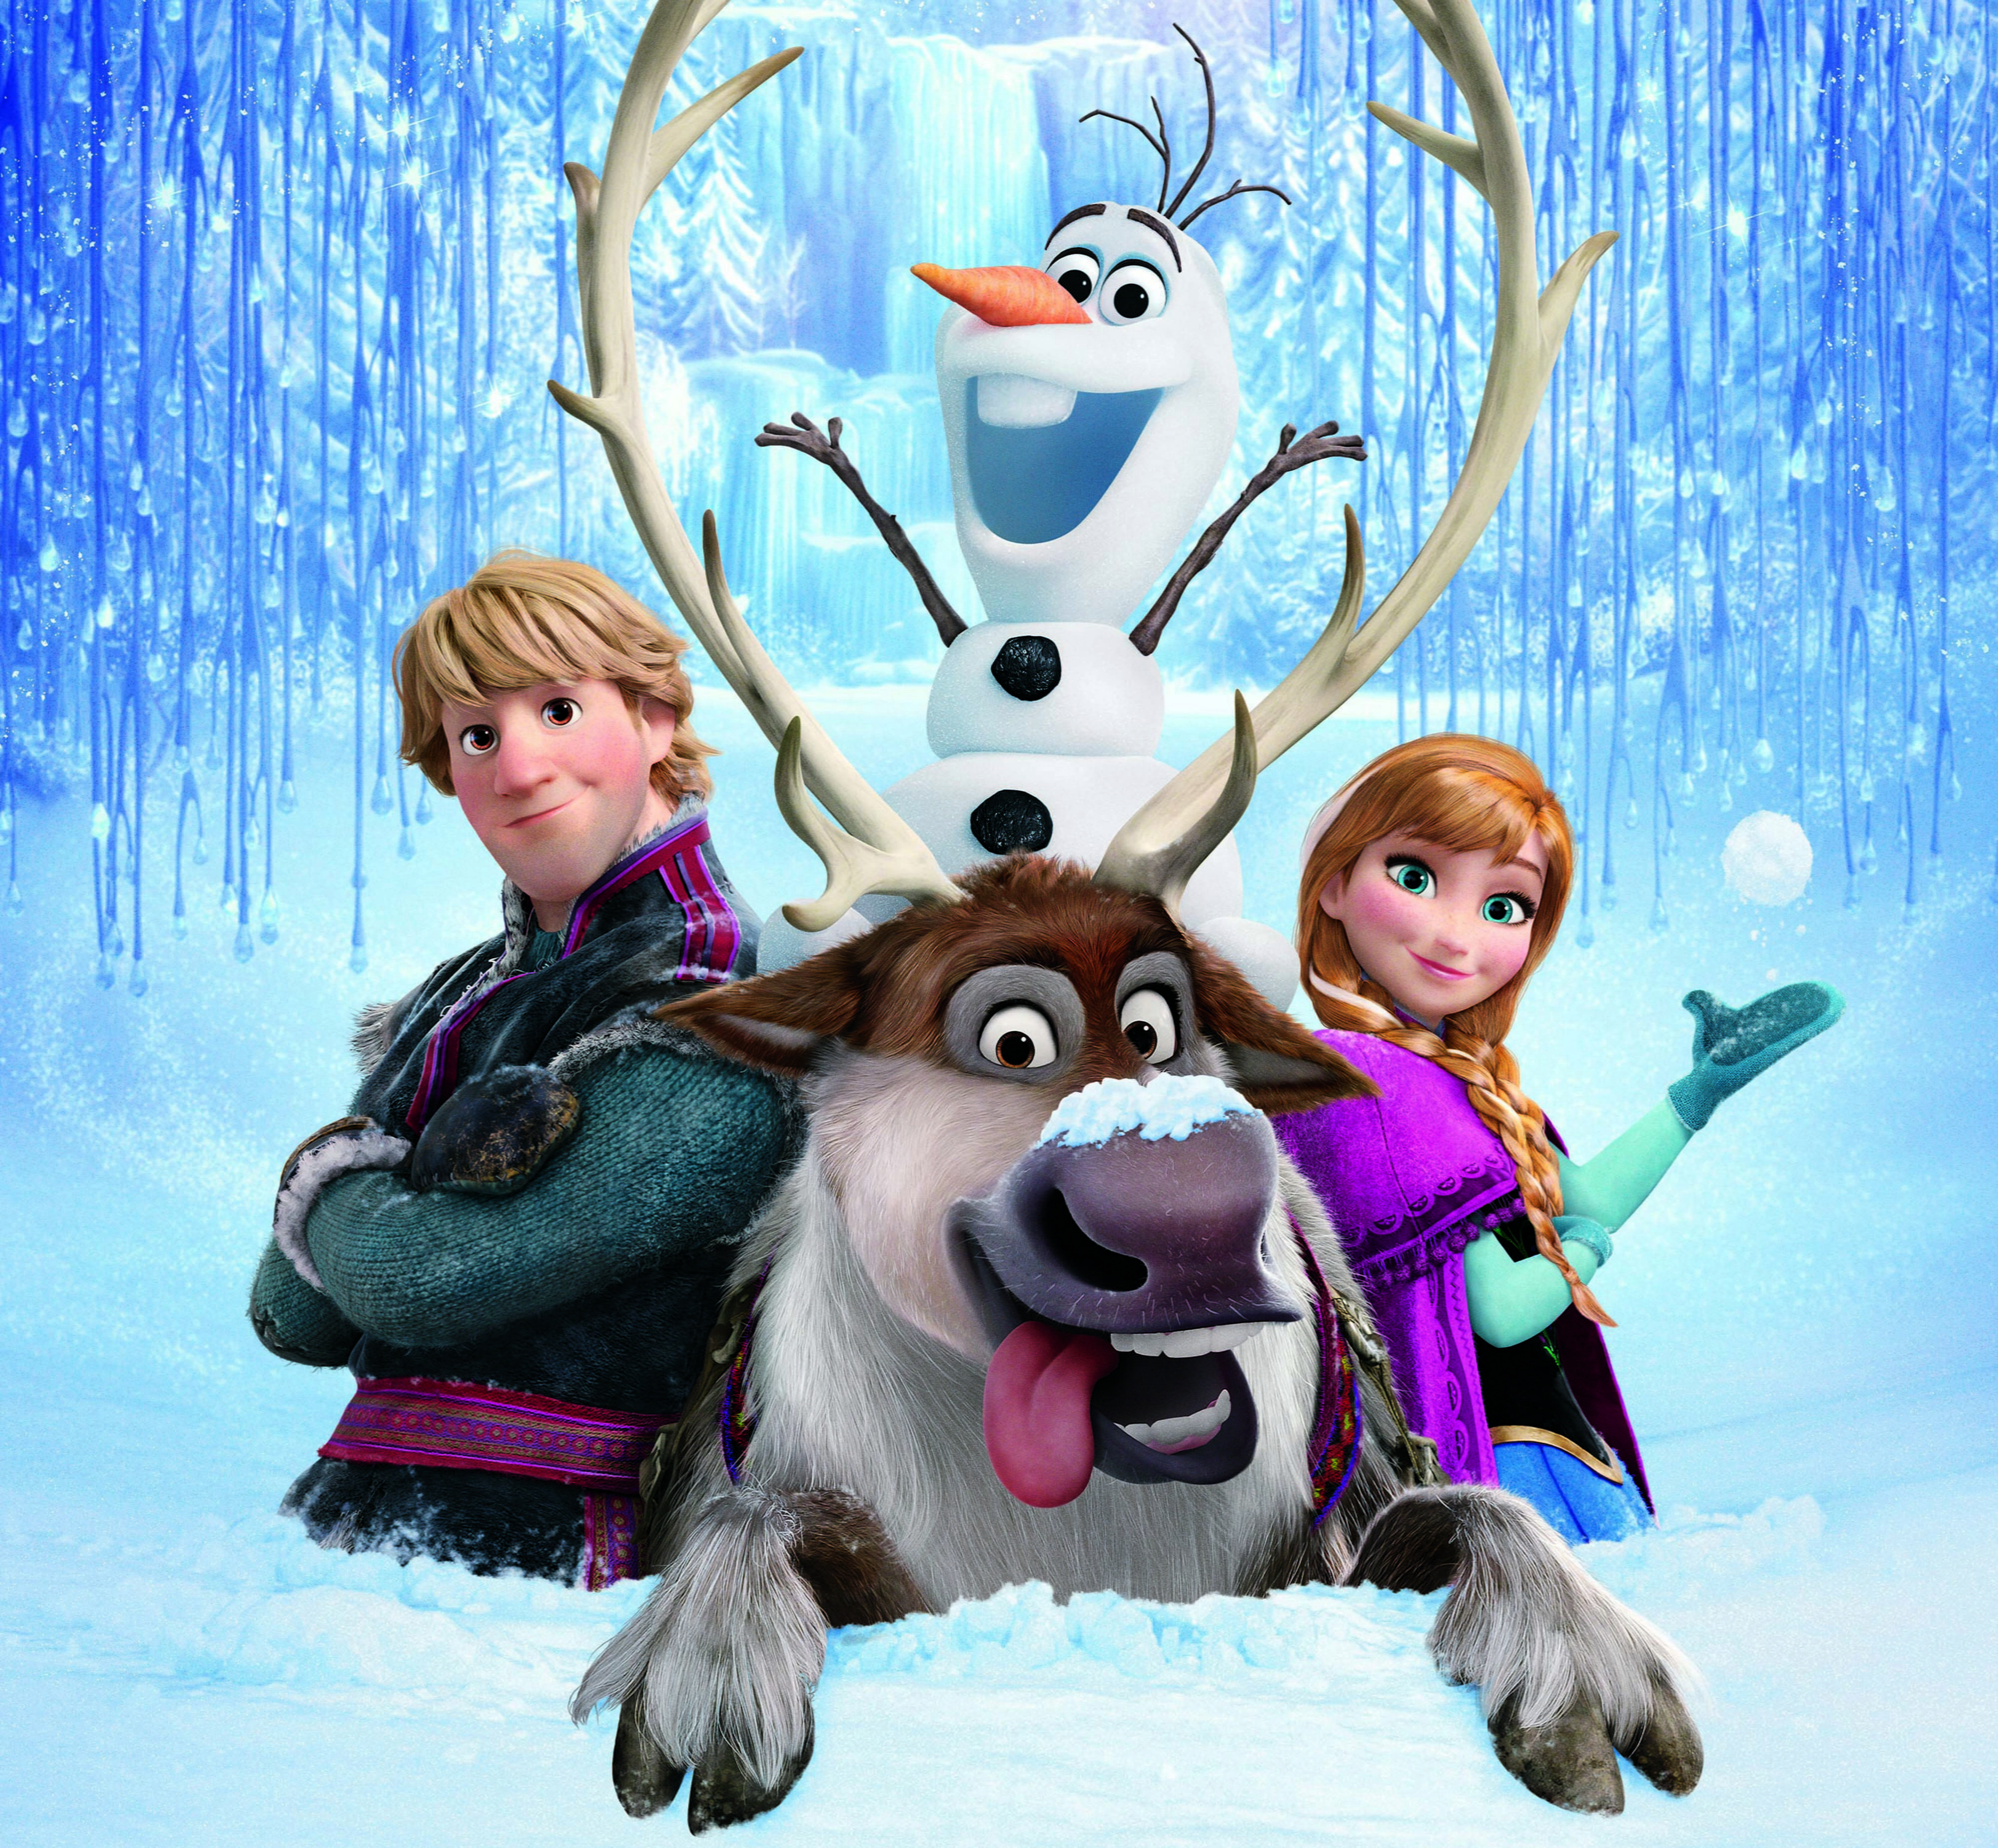 Disney Frozen wallpaper, snow, snowflakes, ice, deer, snowman